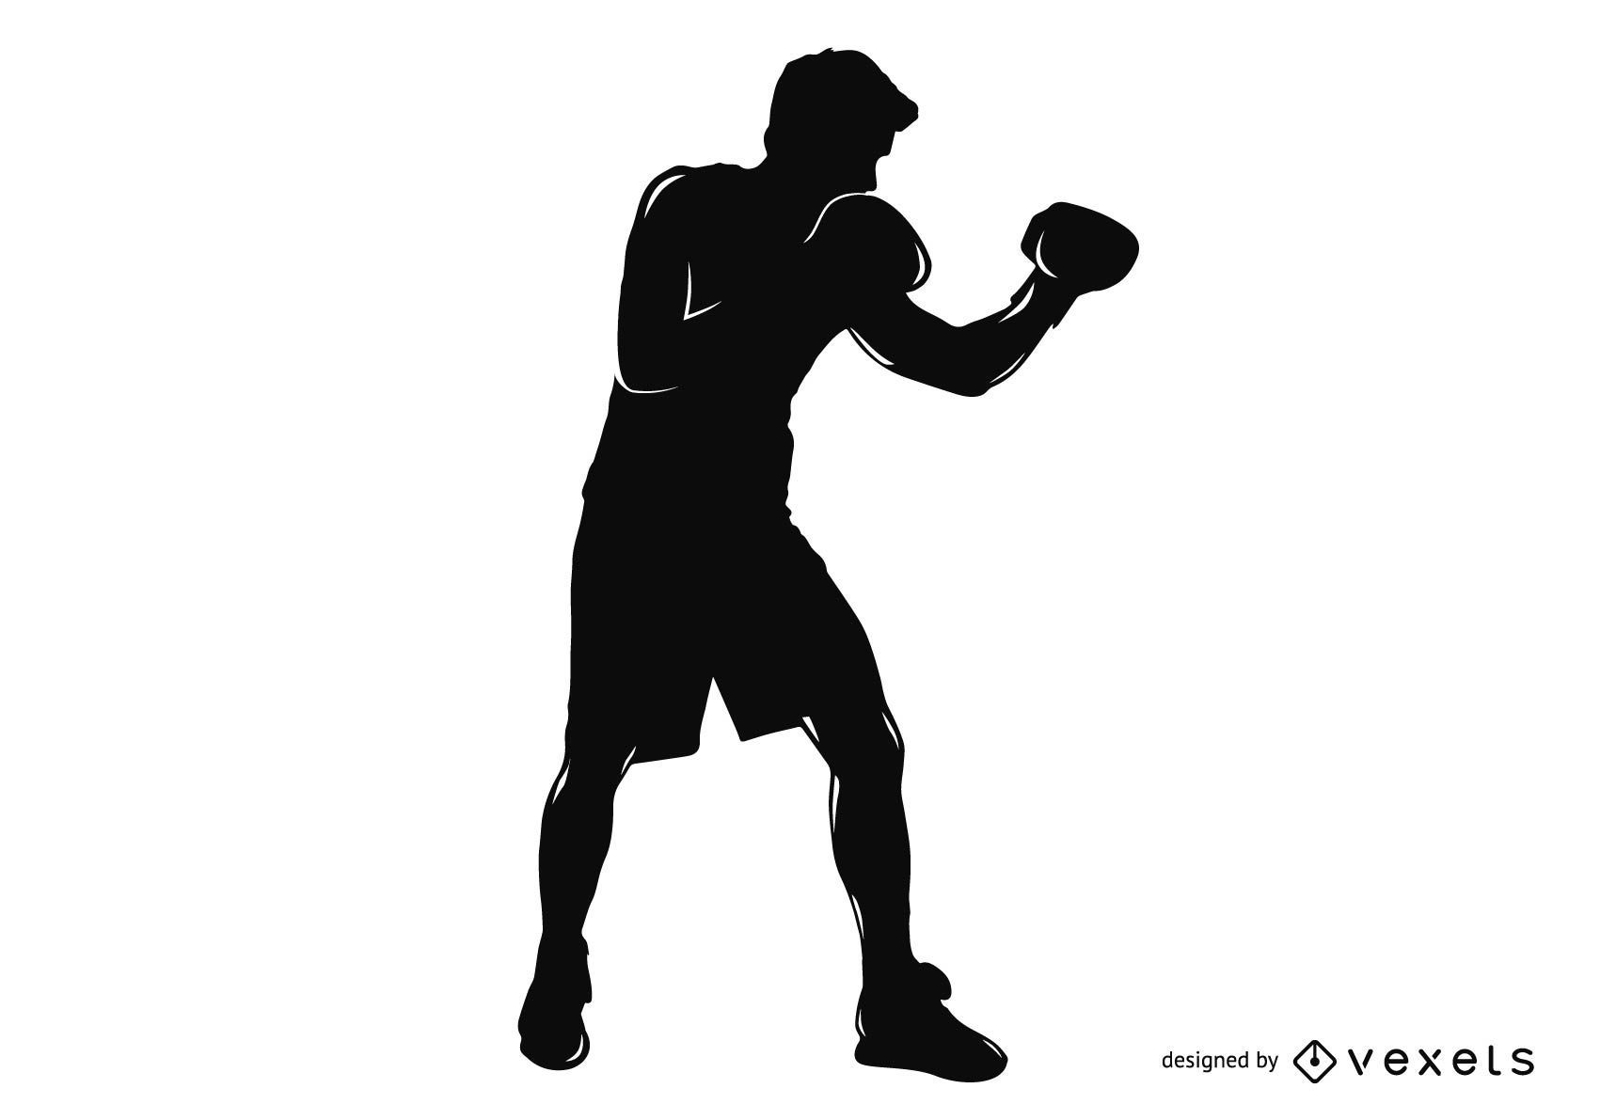 Descarga Vector De Diseño De Camiseta De Boxeo Para Hombre.